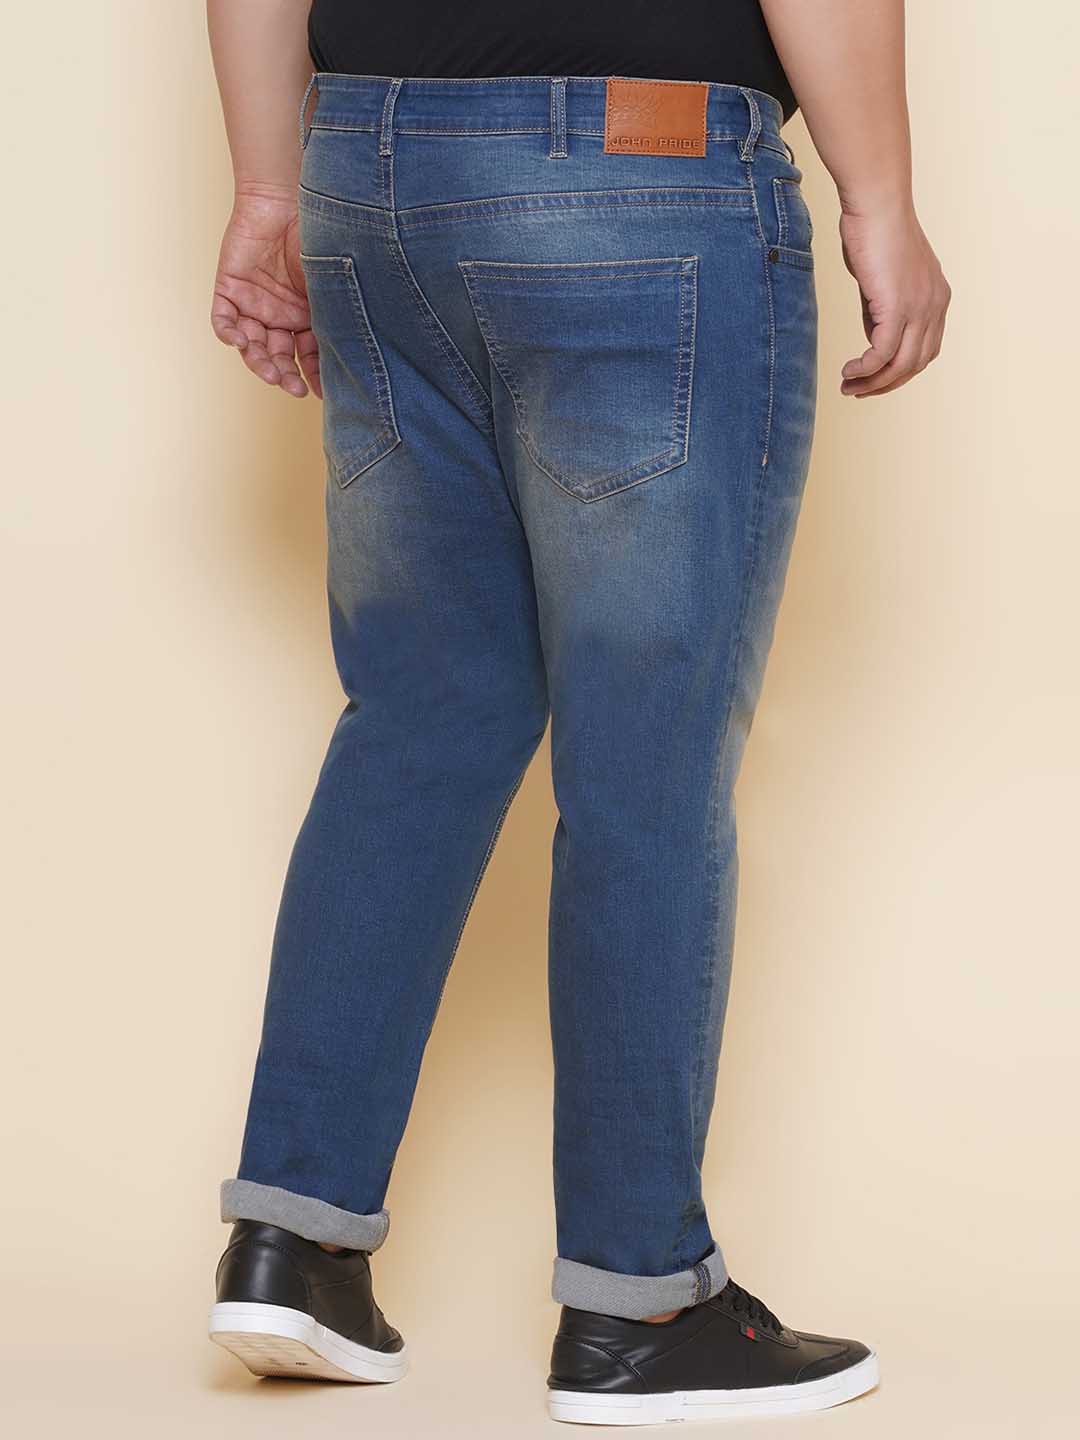 bottomwear/jeans/JPJ27108/jpj27108-5.jpg